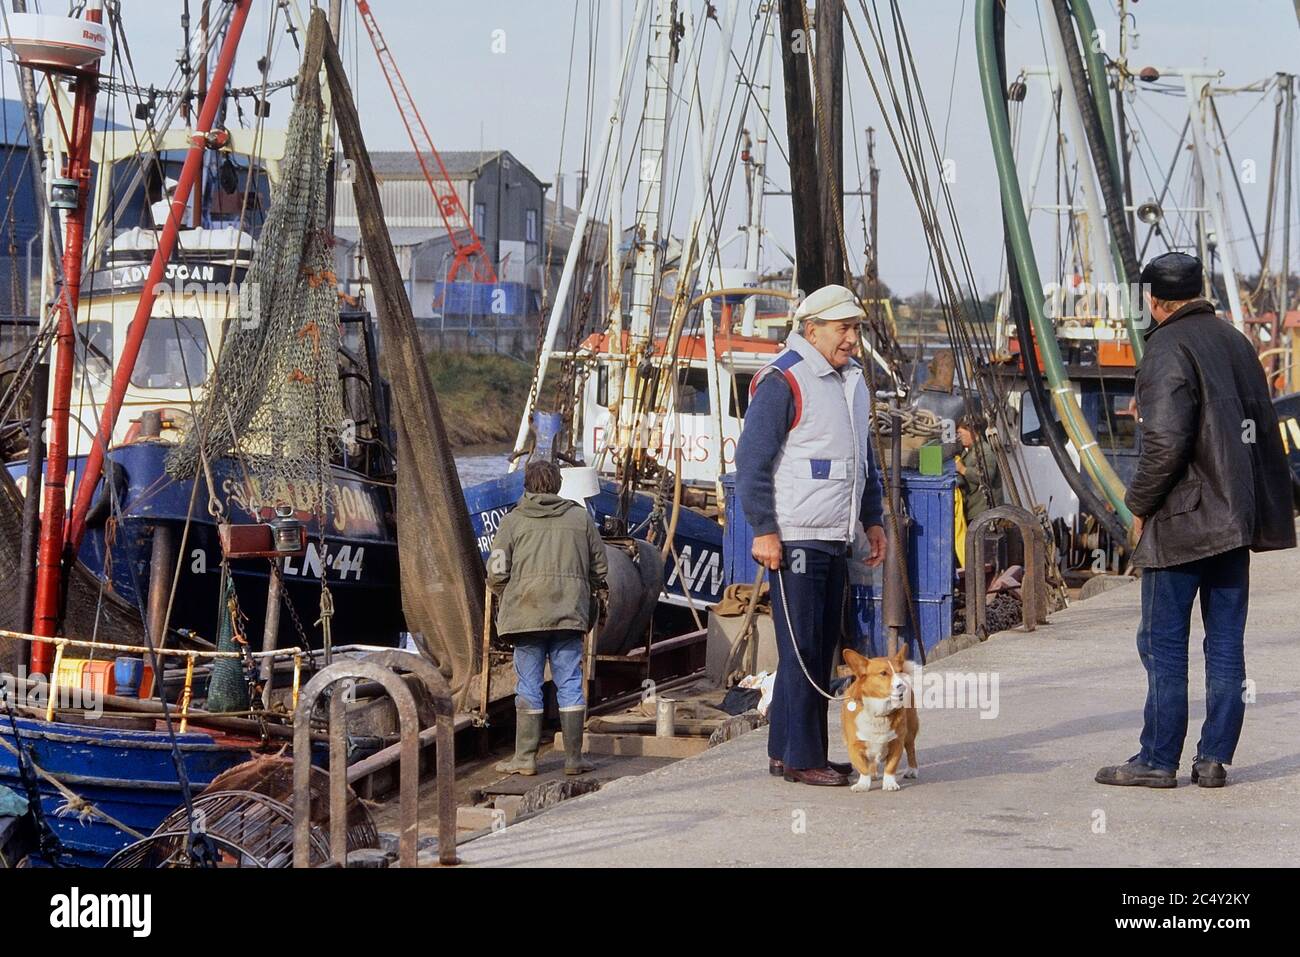 Un homme marchant son chien le long du quai où des bateaux de pêche à la crevette sont à l'entrée de King's Lynn. Norfolk. Angleterre. ROYAUME-UNI. Europe Banque D'Images